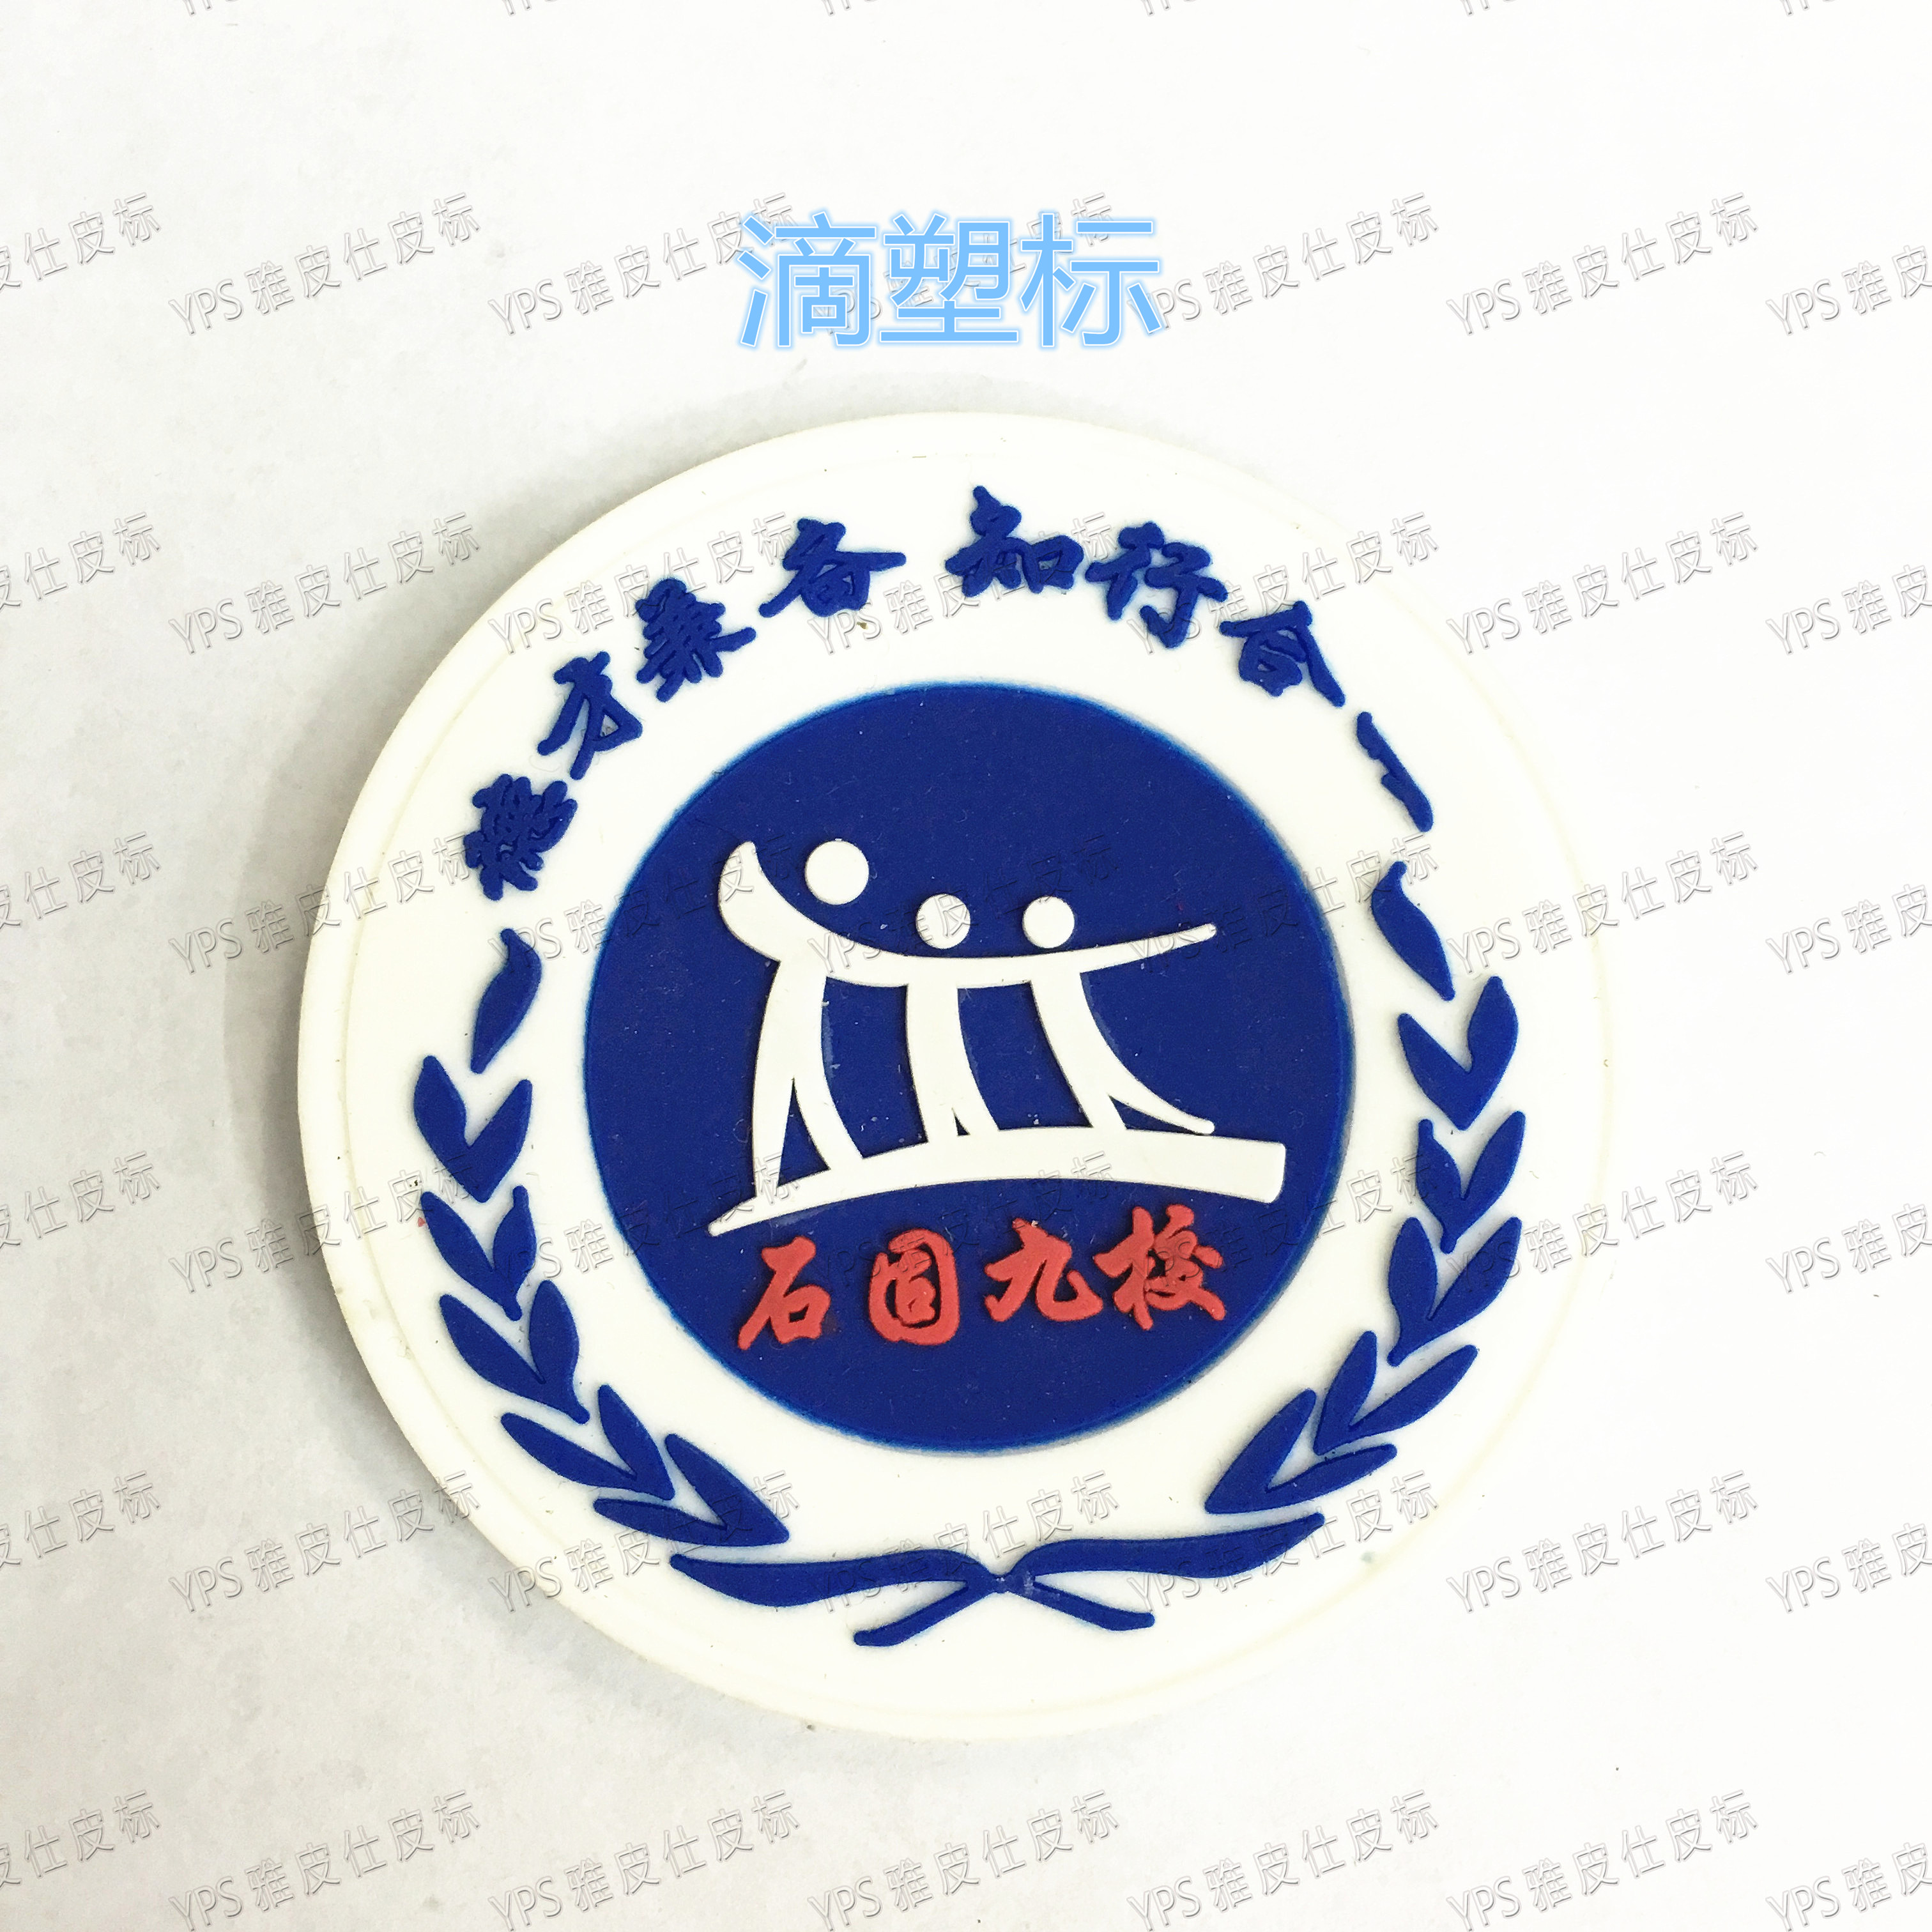 商标商标滳塑标 PVC标夹标滳塑卡通耳学习徽章皮标厂家直销图